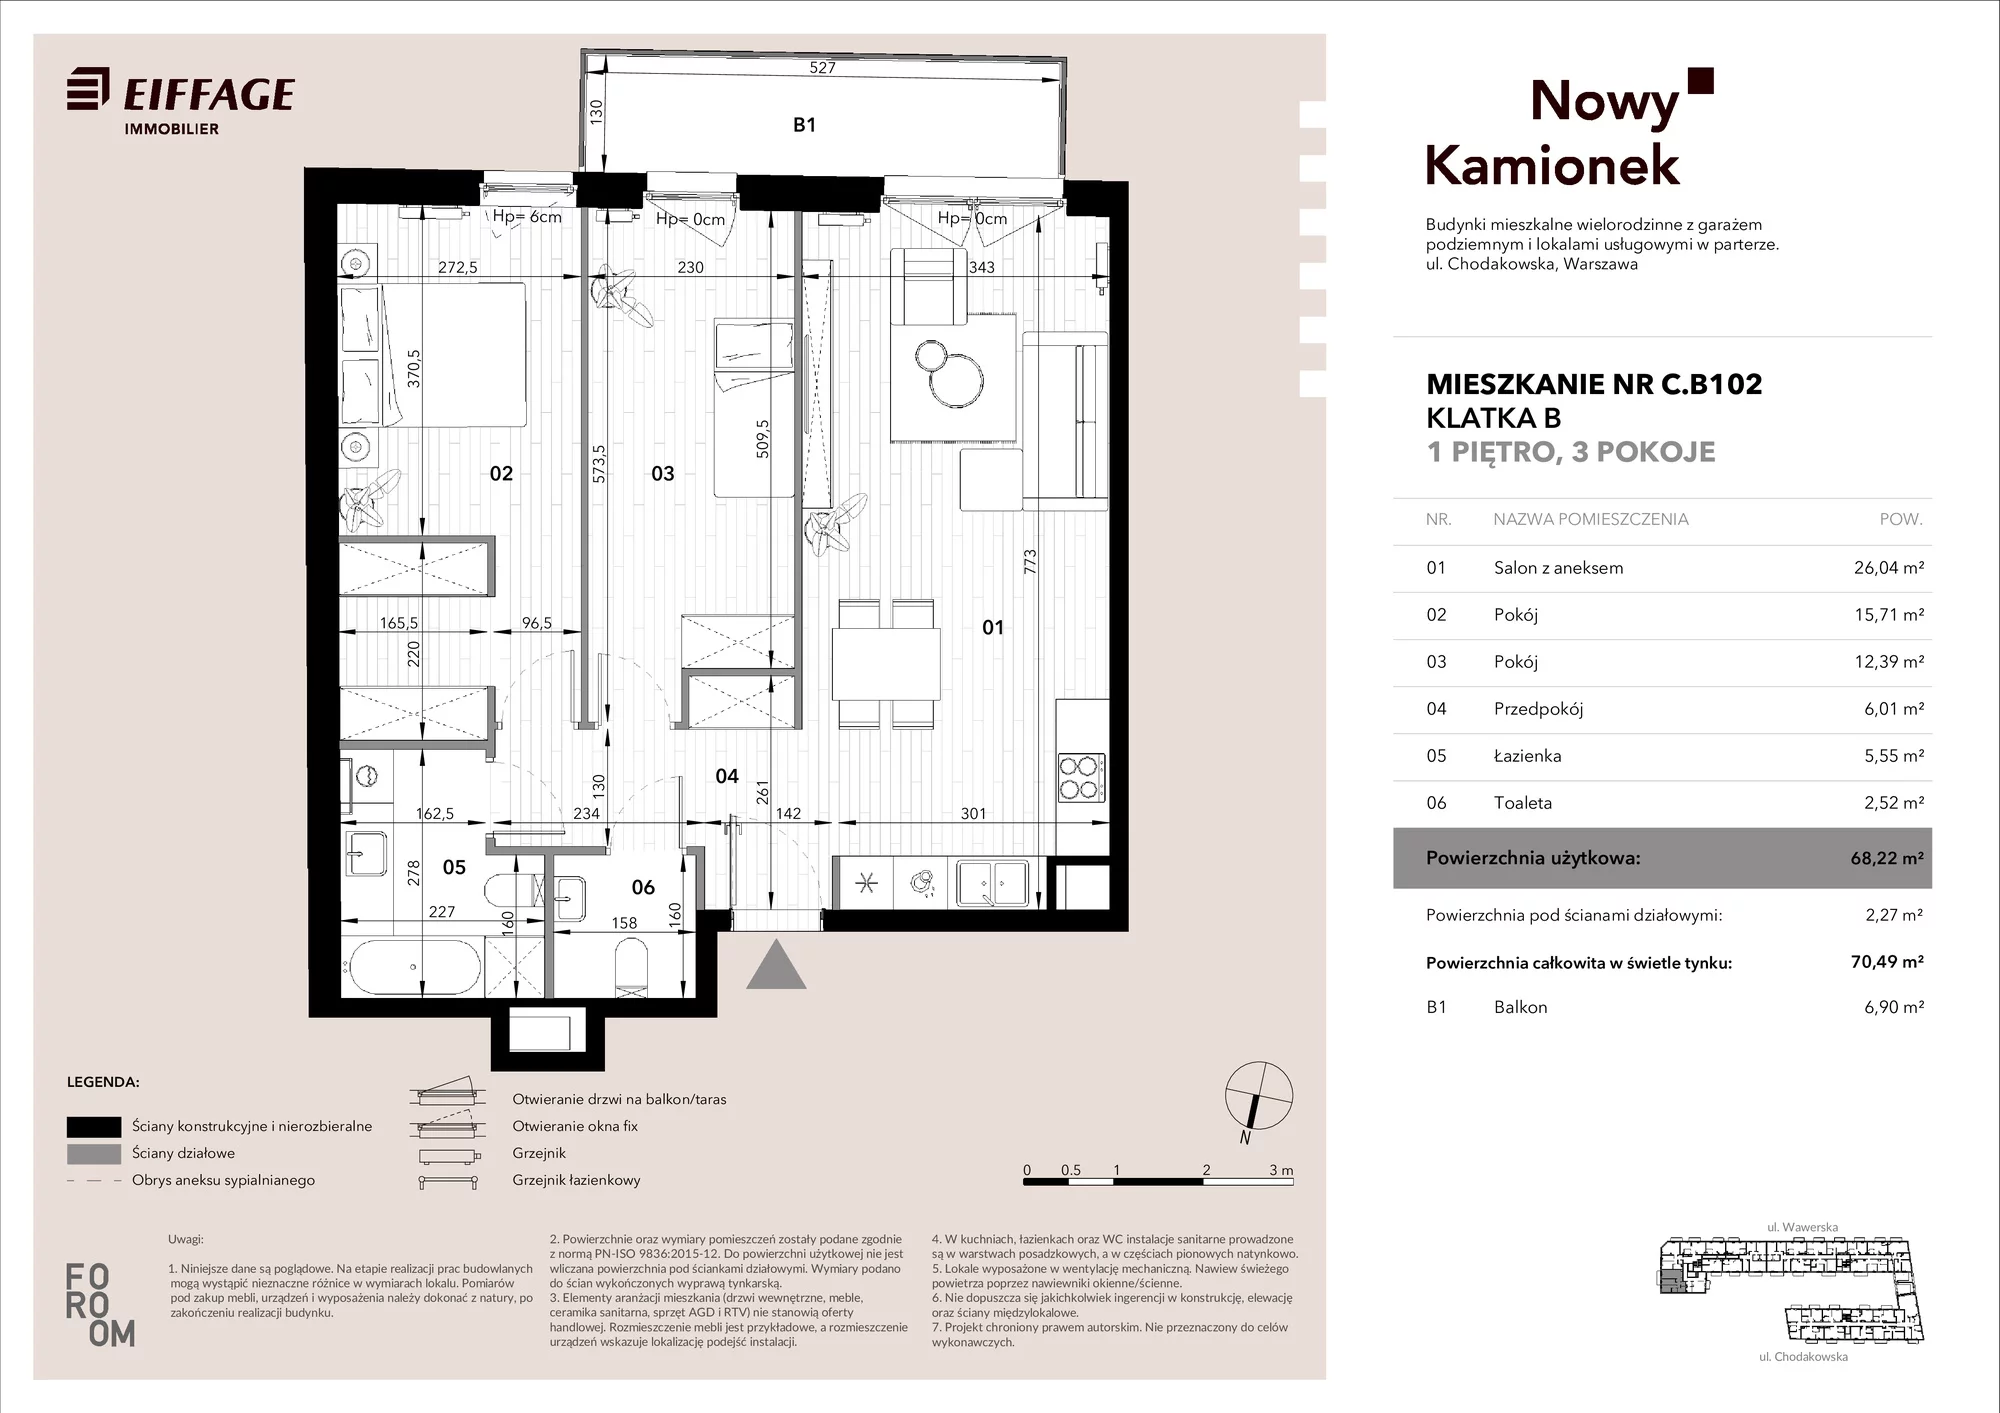 Mieszkanie 68,22 m², piętro 1, oferta nr C.B102, Nowy Kamionek, Warszawa, Praga Południe, Kamionek, ul. Chodakowska